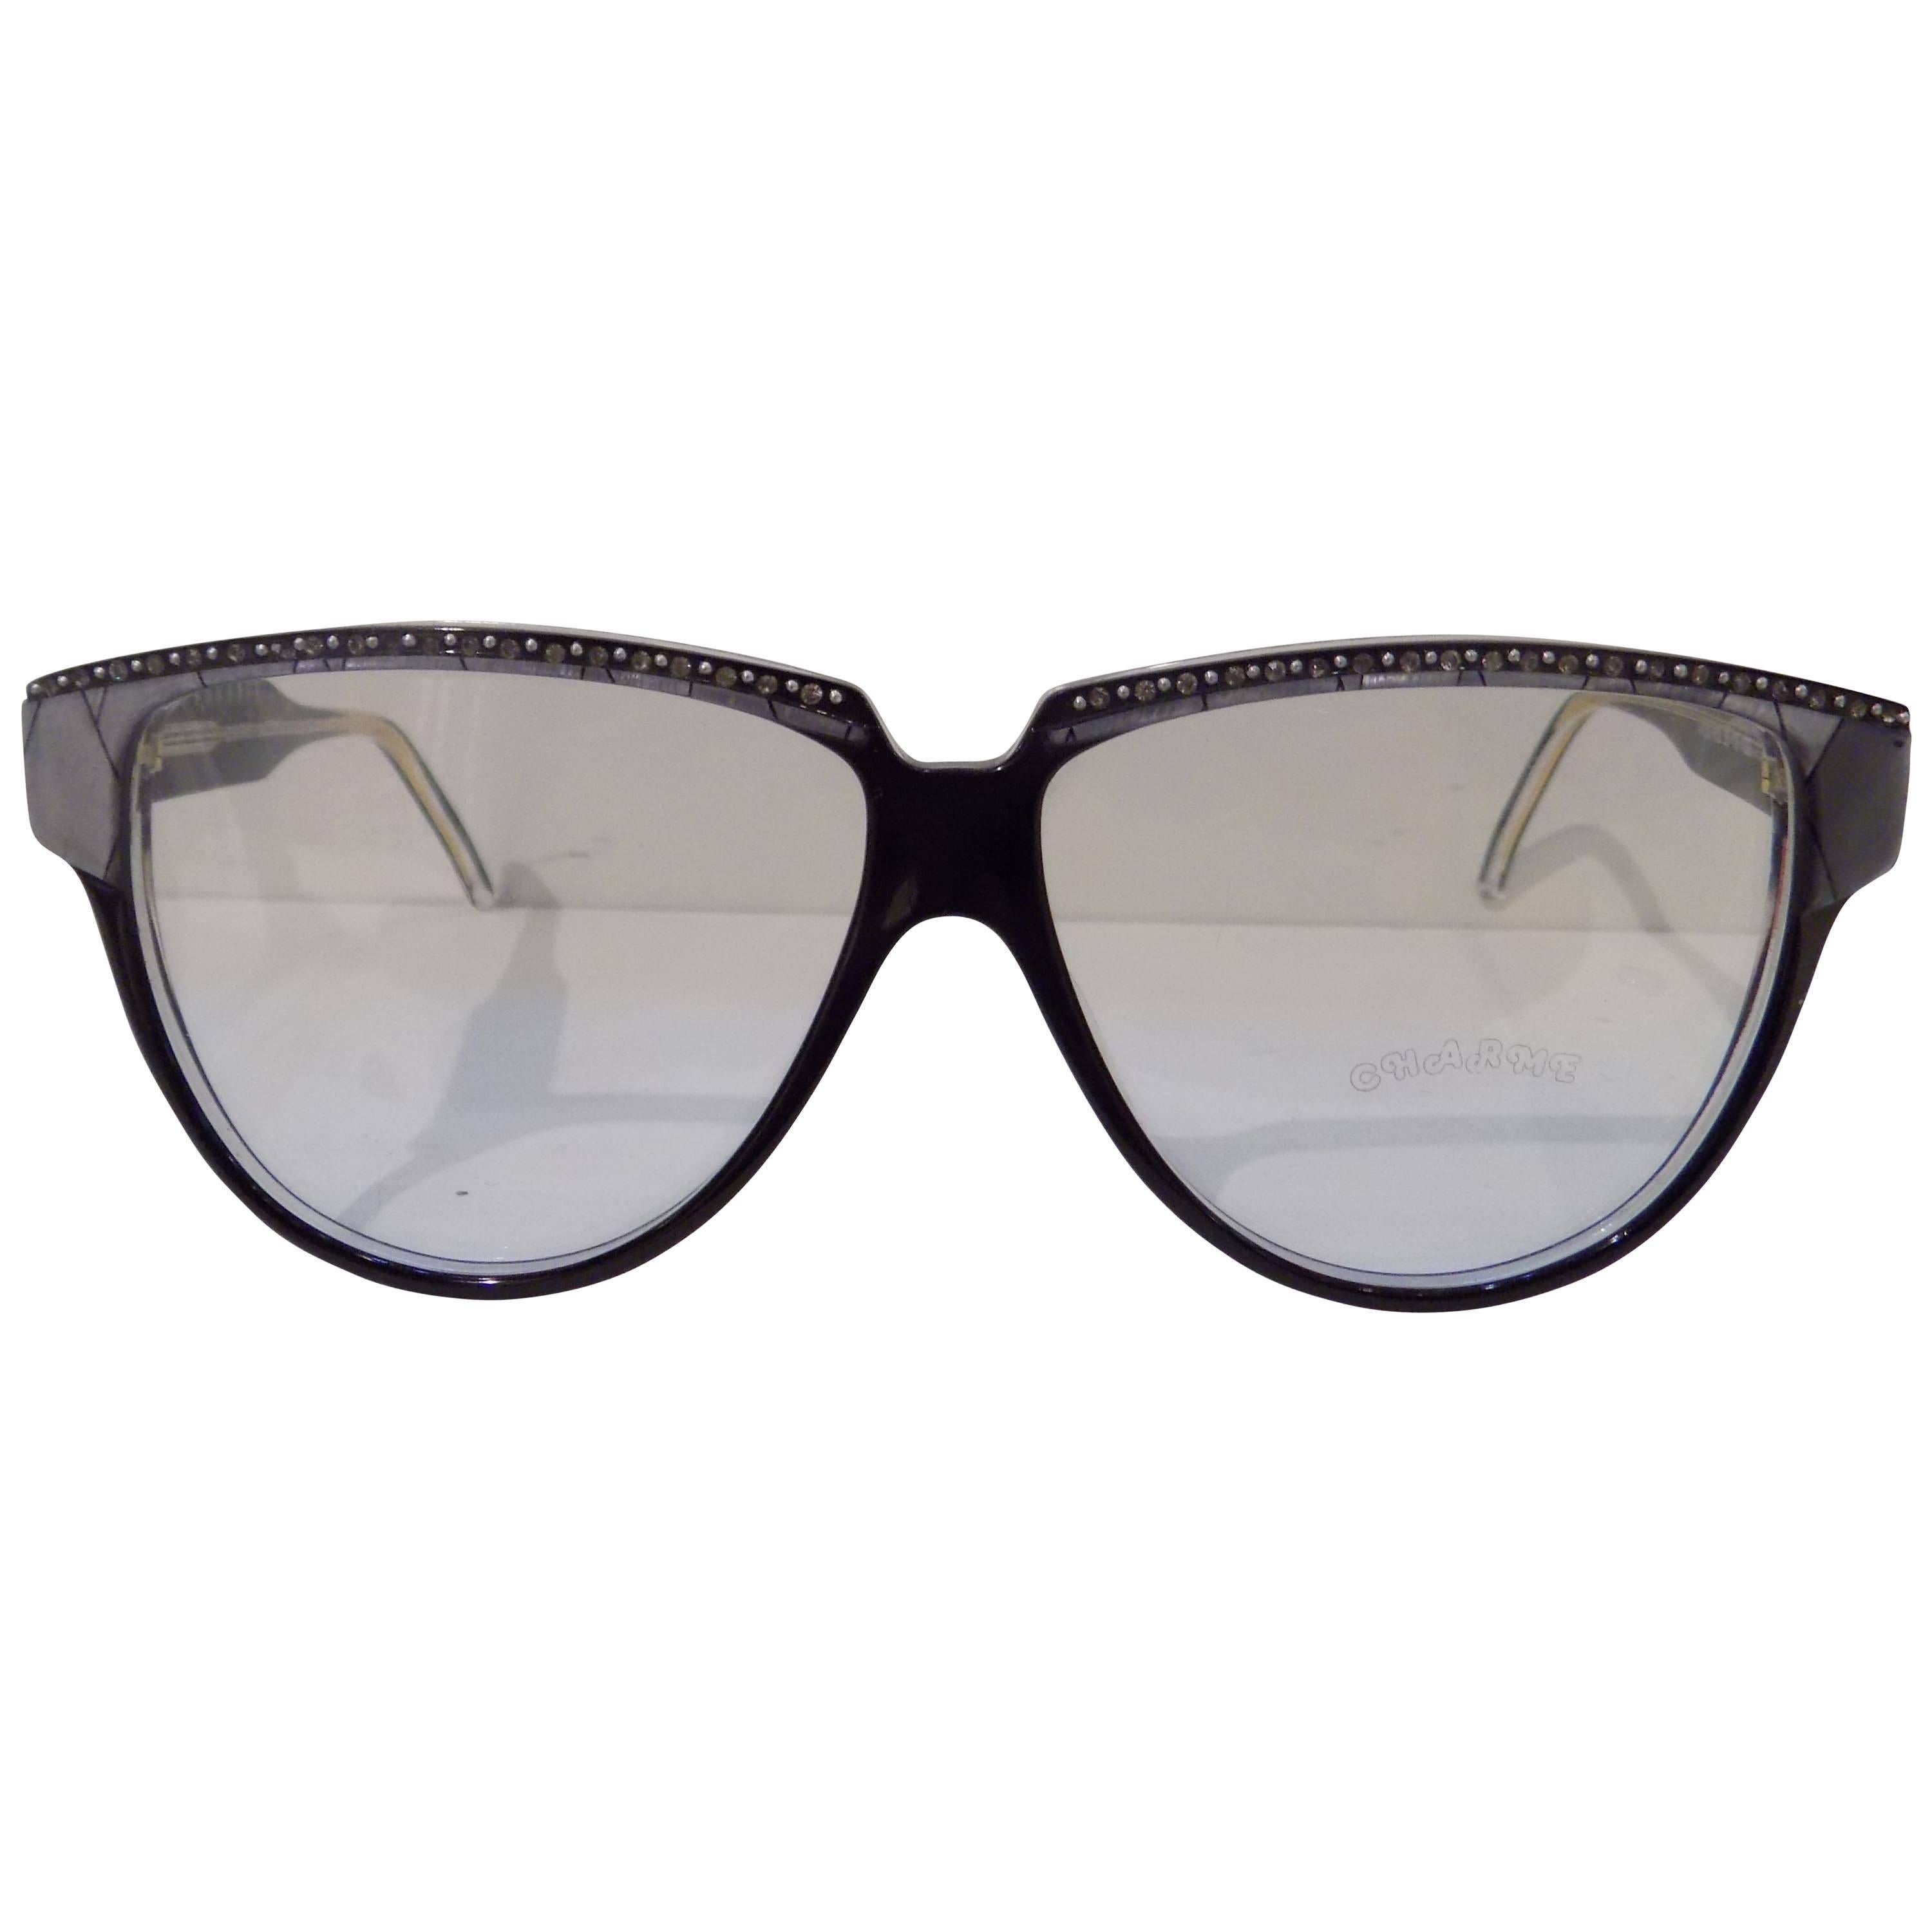 1980s Charme frame- glasses